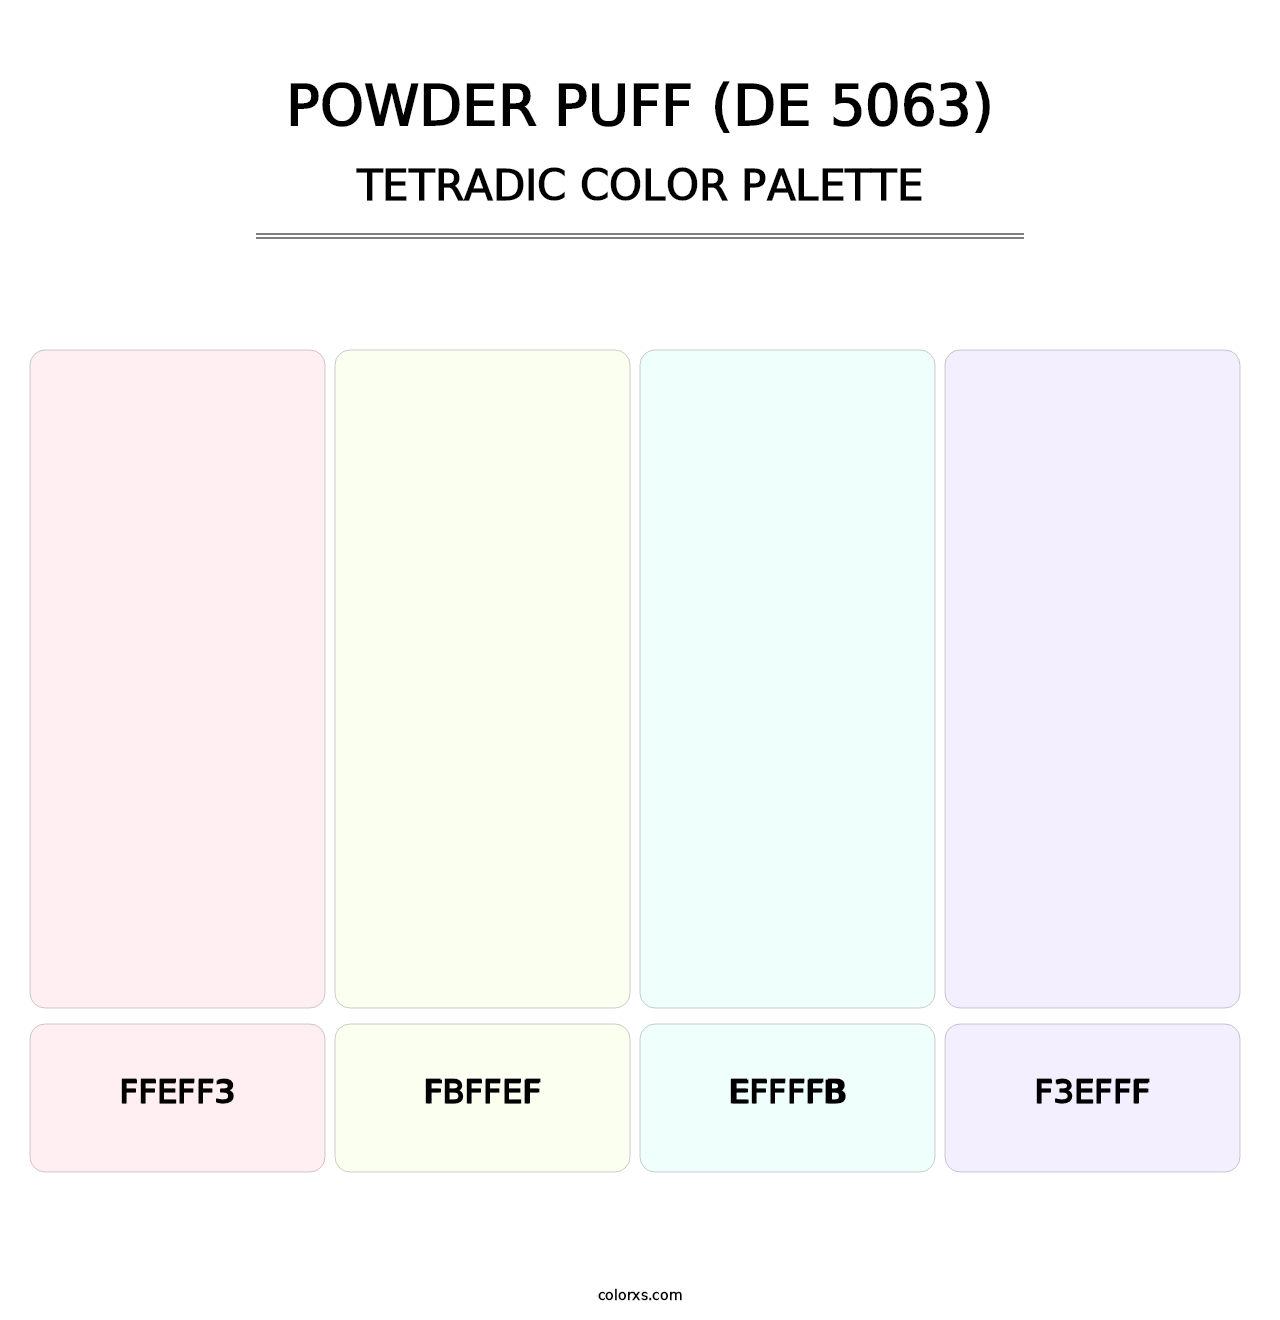 Powder Puff (DE 5063) - Tetradic Color Palette